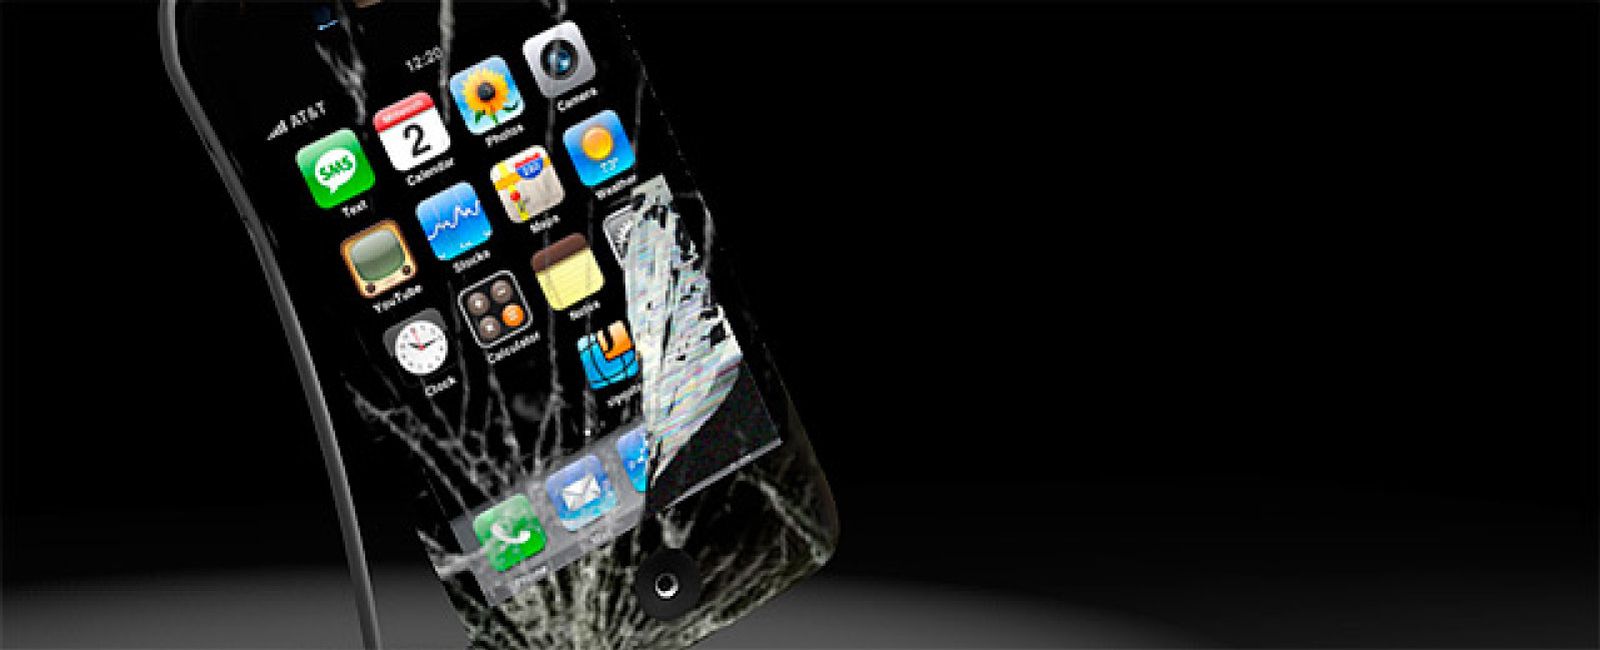 Foto: ¿Caminamos hacia el final de la hegemonía del iPhone?